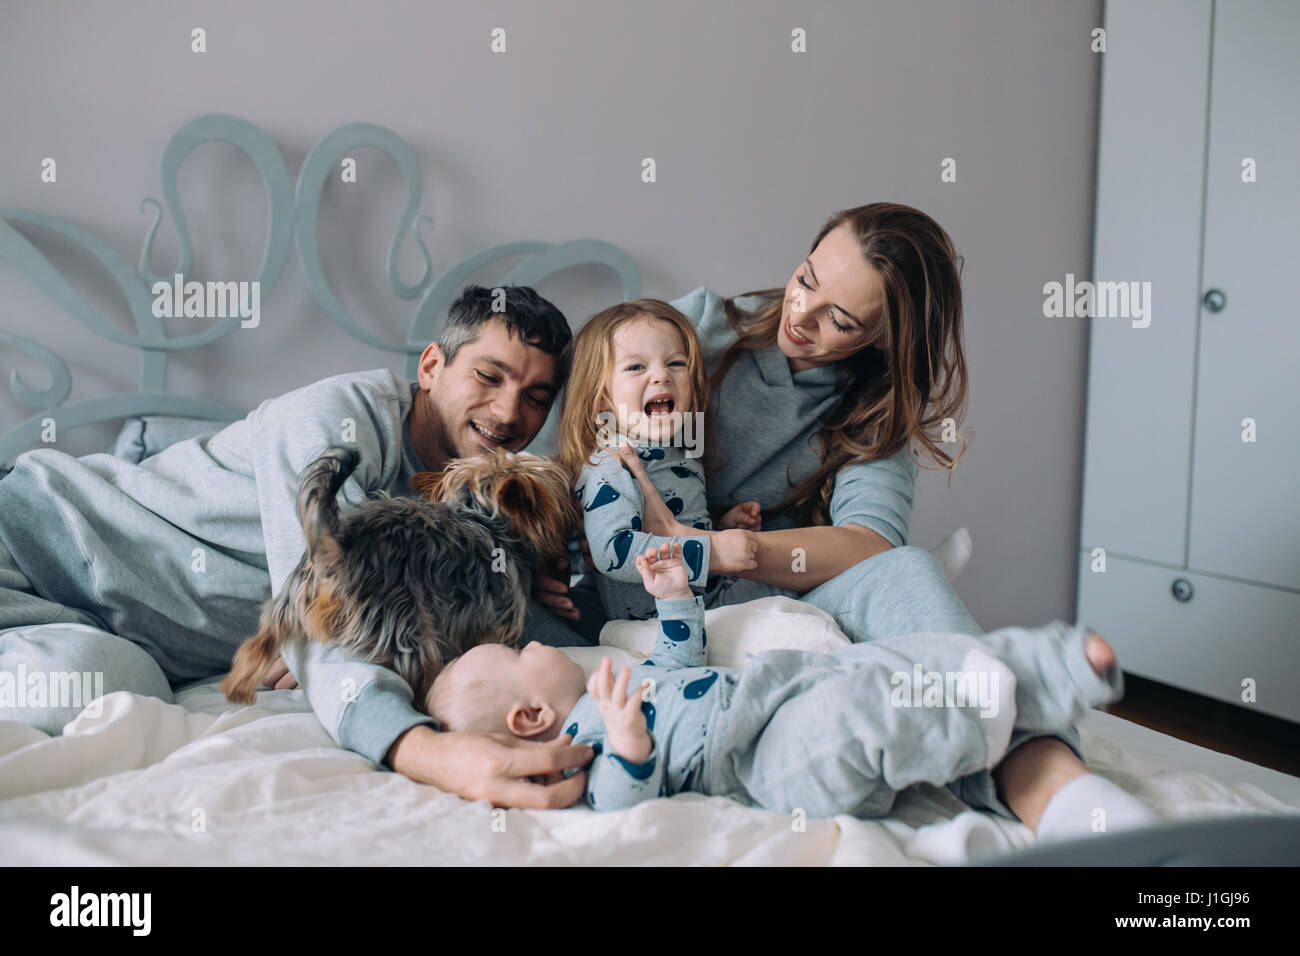 La mère, le père, la fille et le bébé sur le lit Banque D'Images